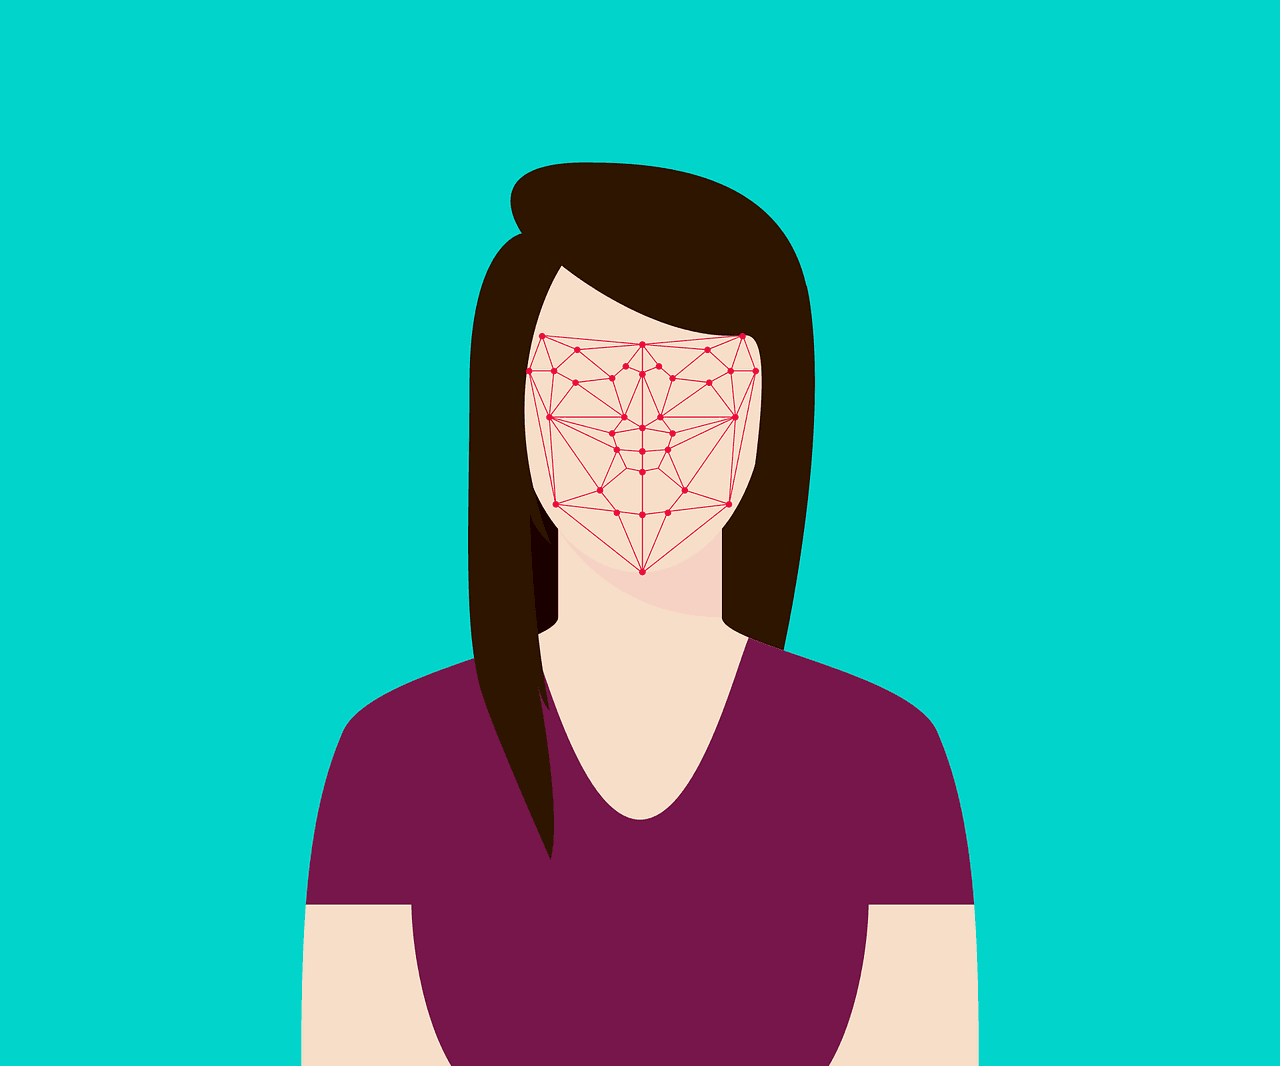 Portland Corporate Facial Recognition congressional scorecard ban facial recognition surveillance mugshot spread of facial recognition